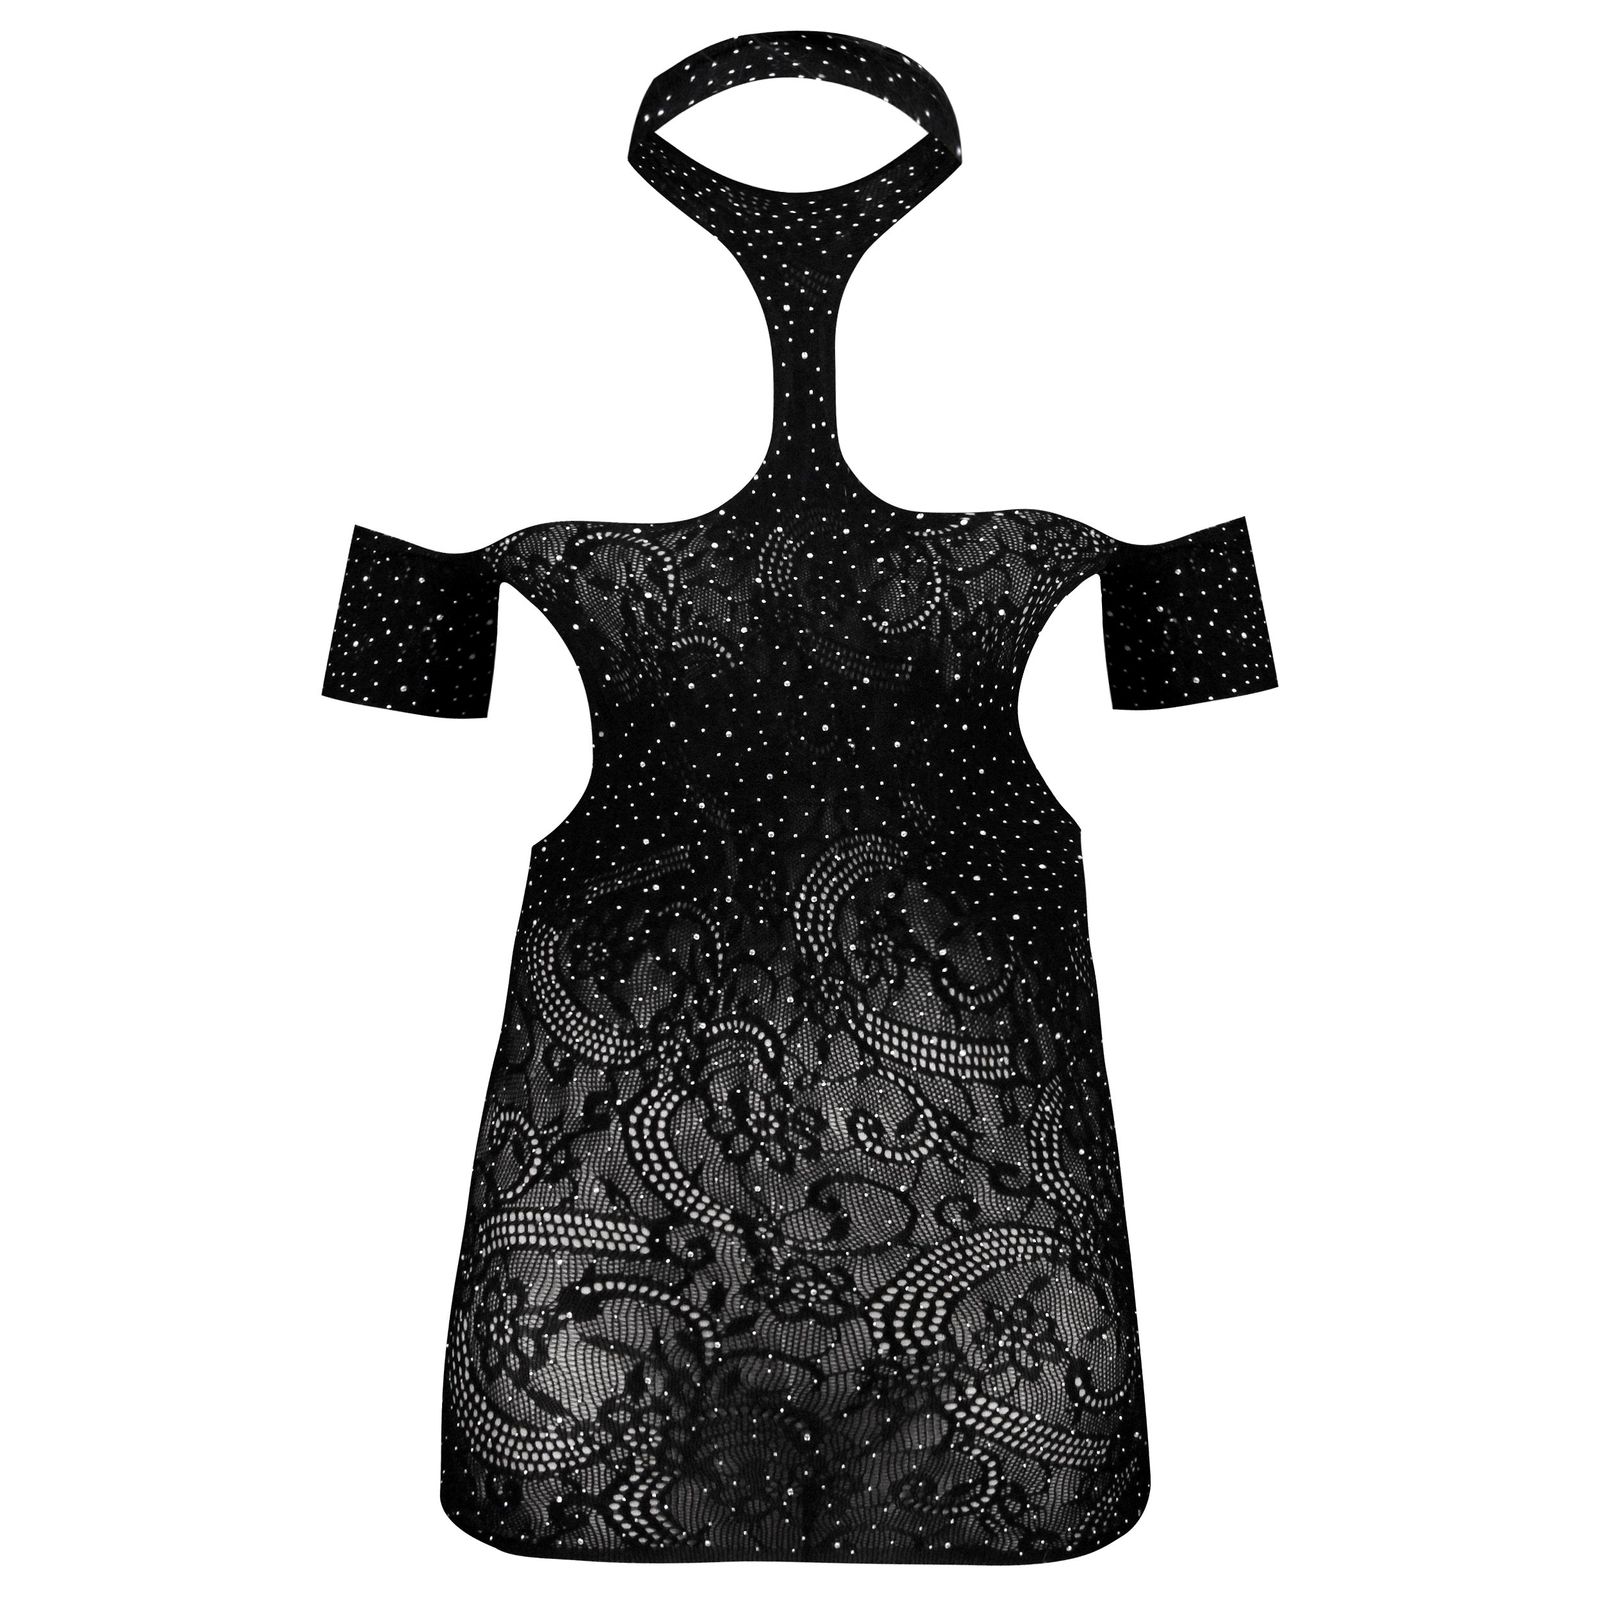 لباس خواب زنانه ماییلدا مدل نگین دار فانتزی کد 4860-7185 رنگ مشکی -  - 1